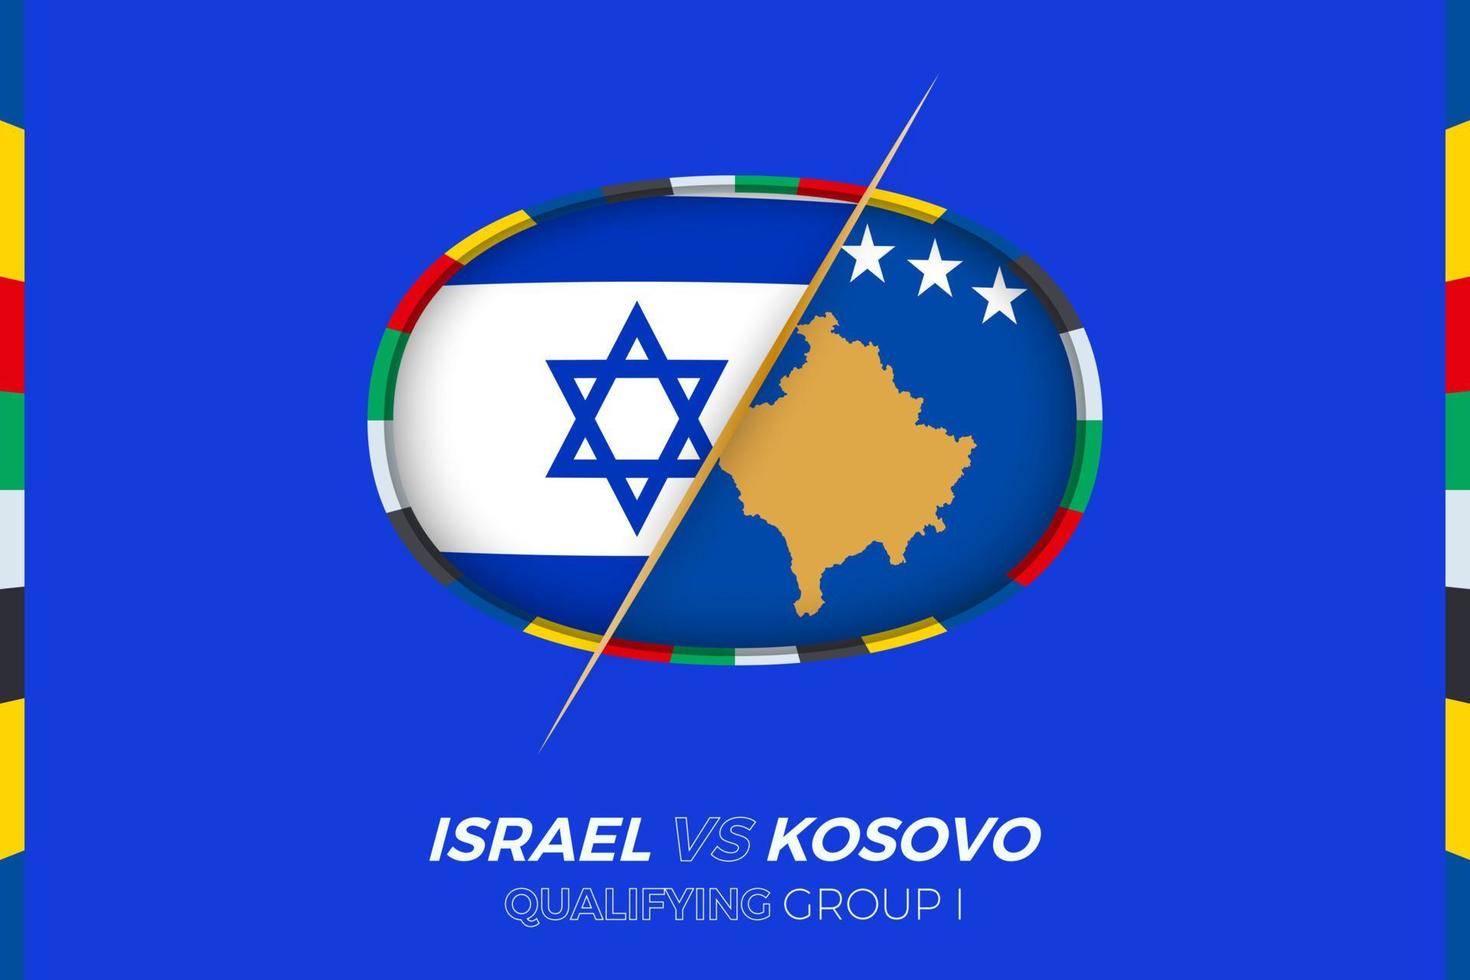 Israel mot kosovo ikon för europeisk fotboll turnering kompetens, grupp i. vektor